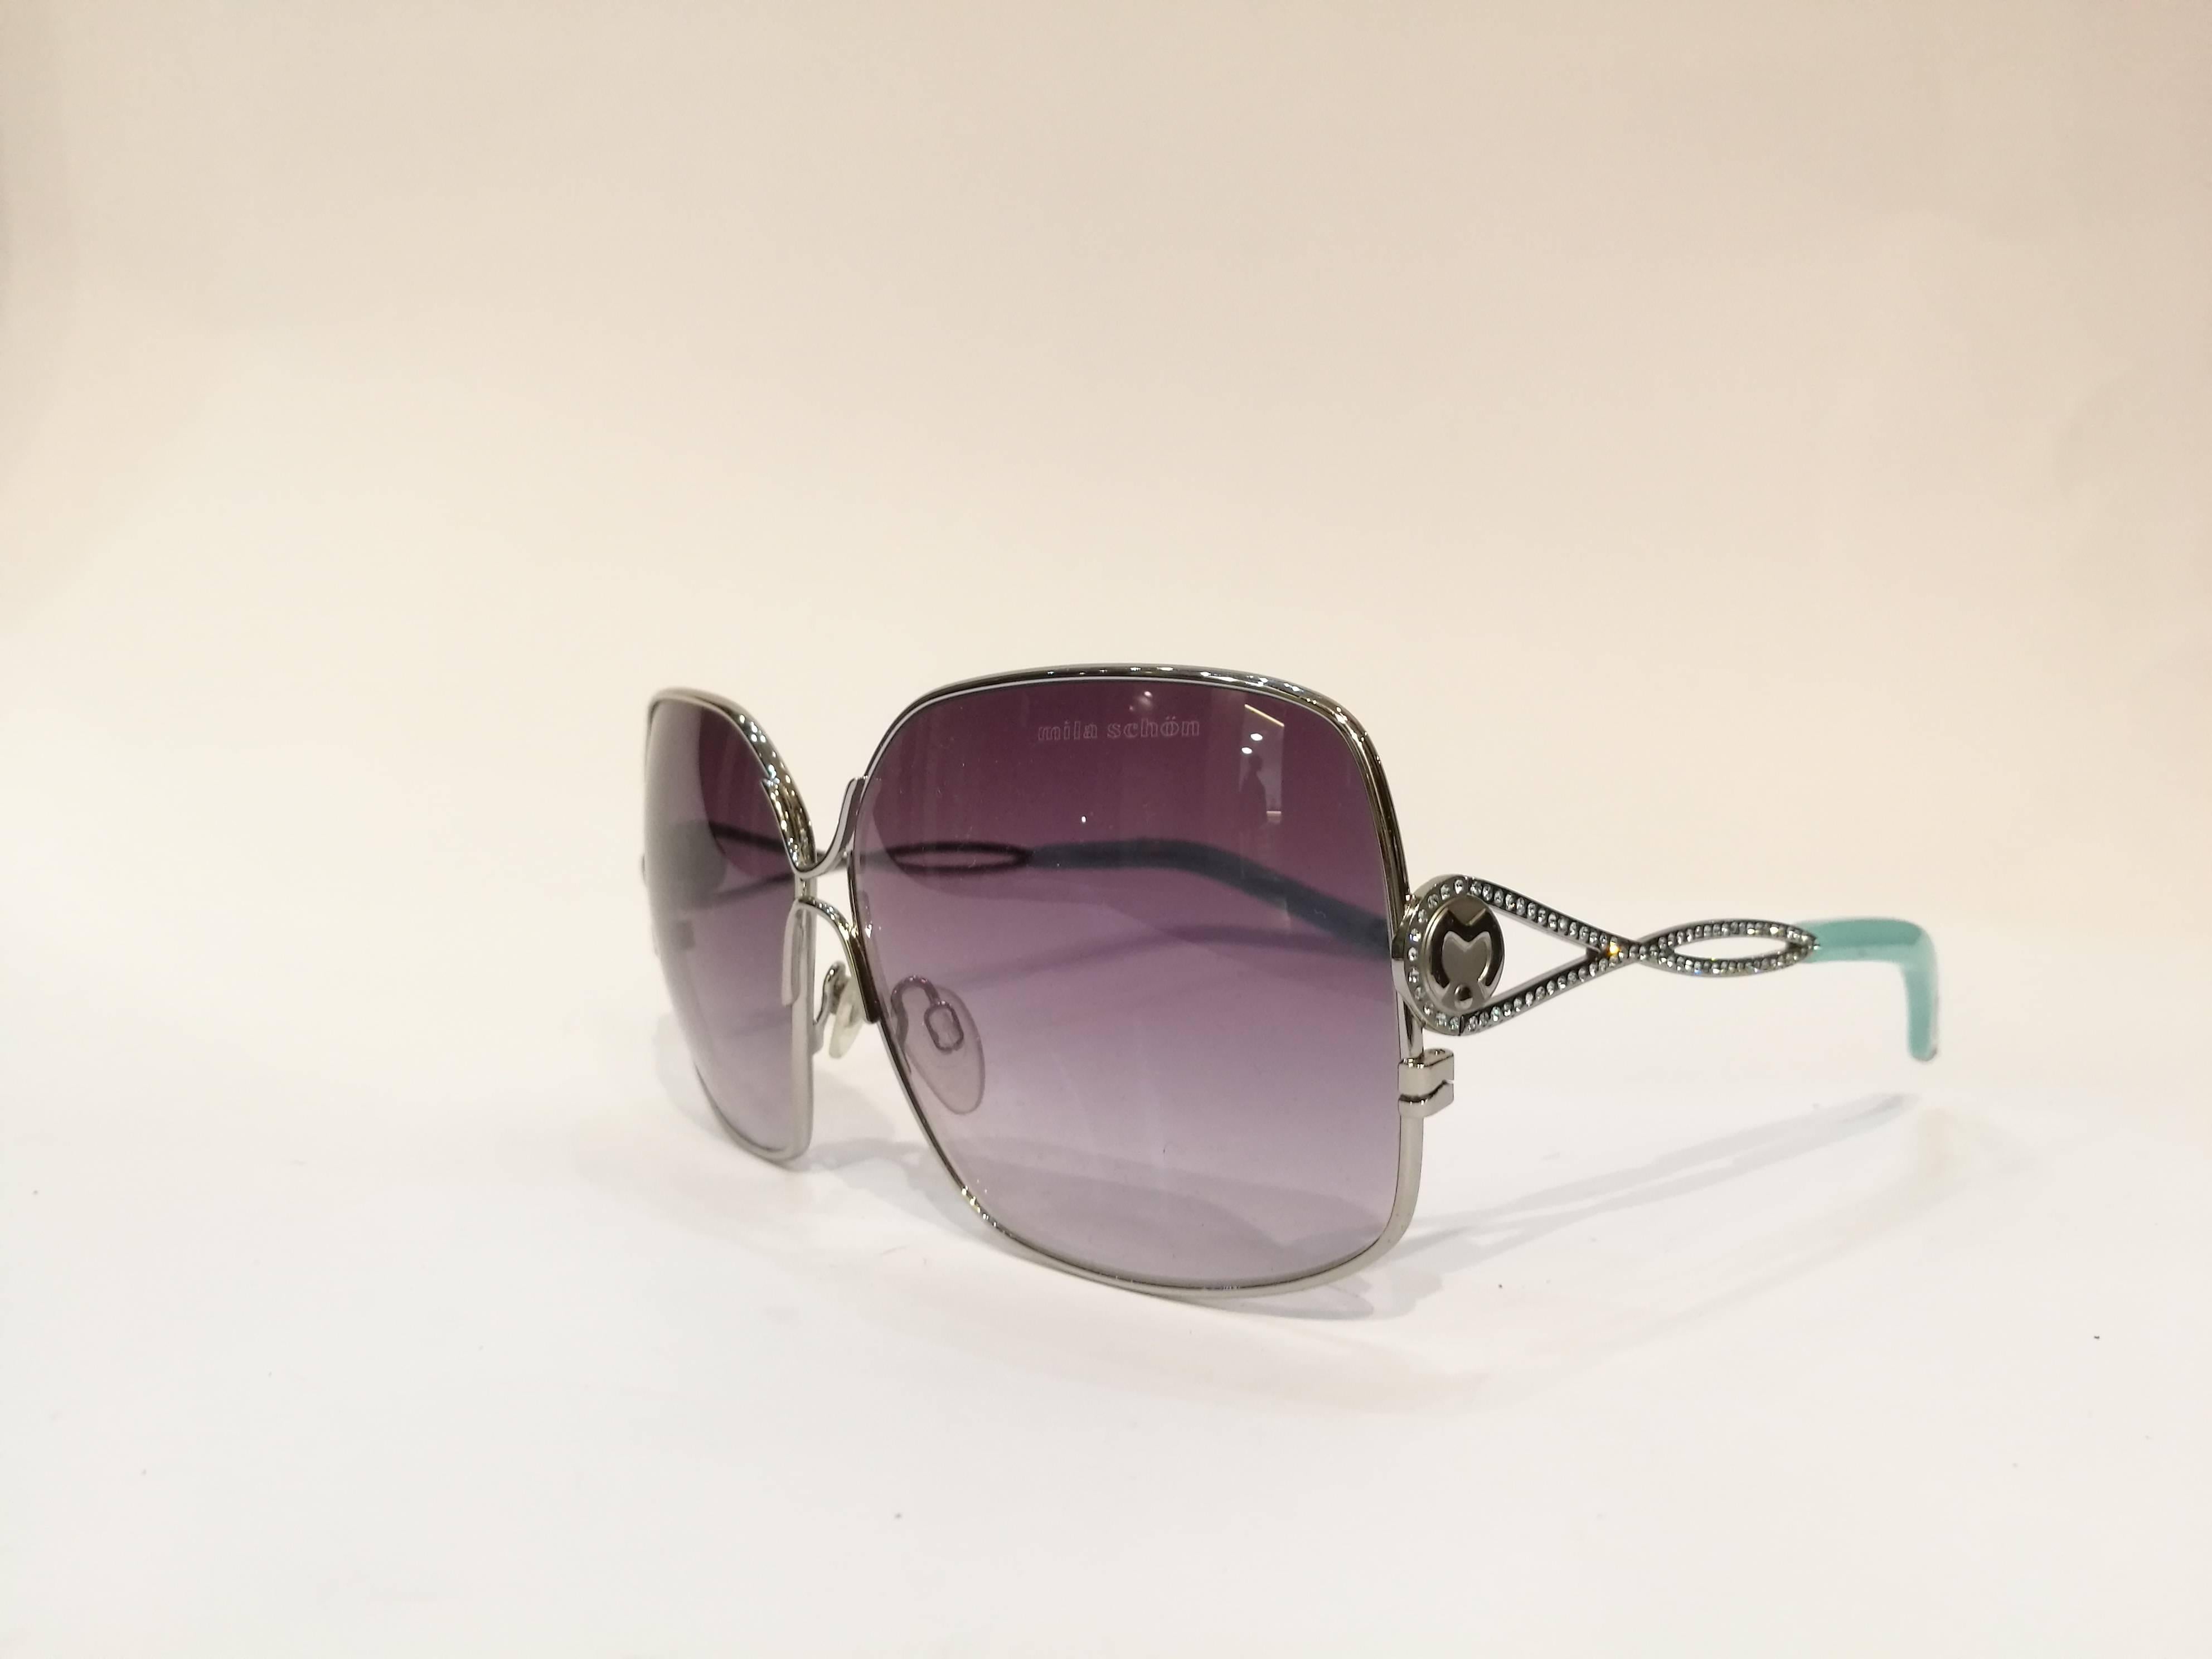 Mila Schon Multitone-Sonnenbrille
Violettfarbenes Glas mit blauen Linsen